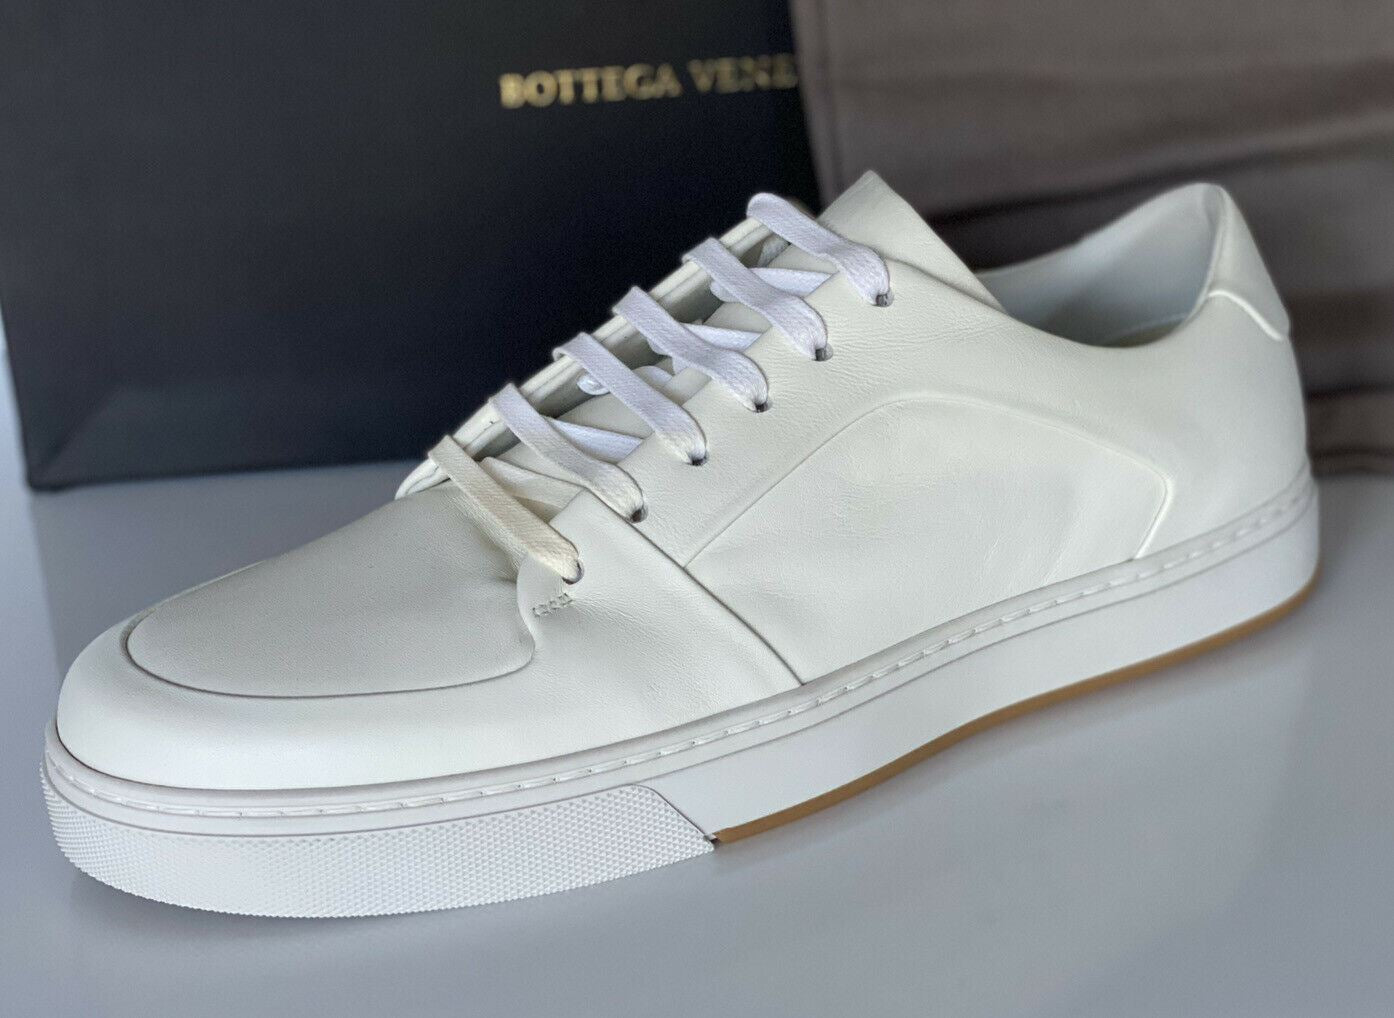 NIB 750 долларов США Bottega Veneta Мужские белые кроссовки Speedster из телячьей кожи 7, США 608761 